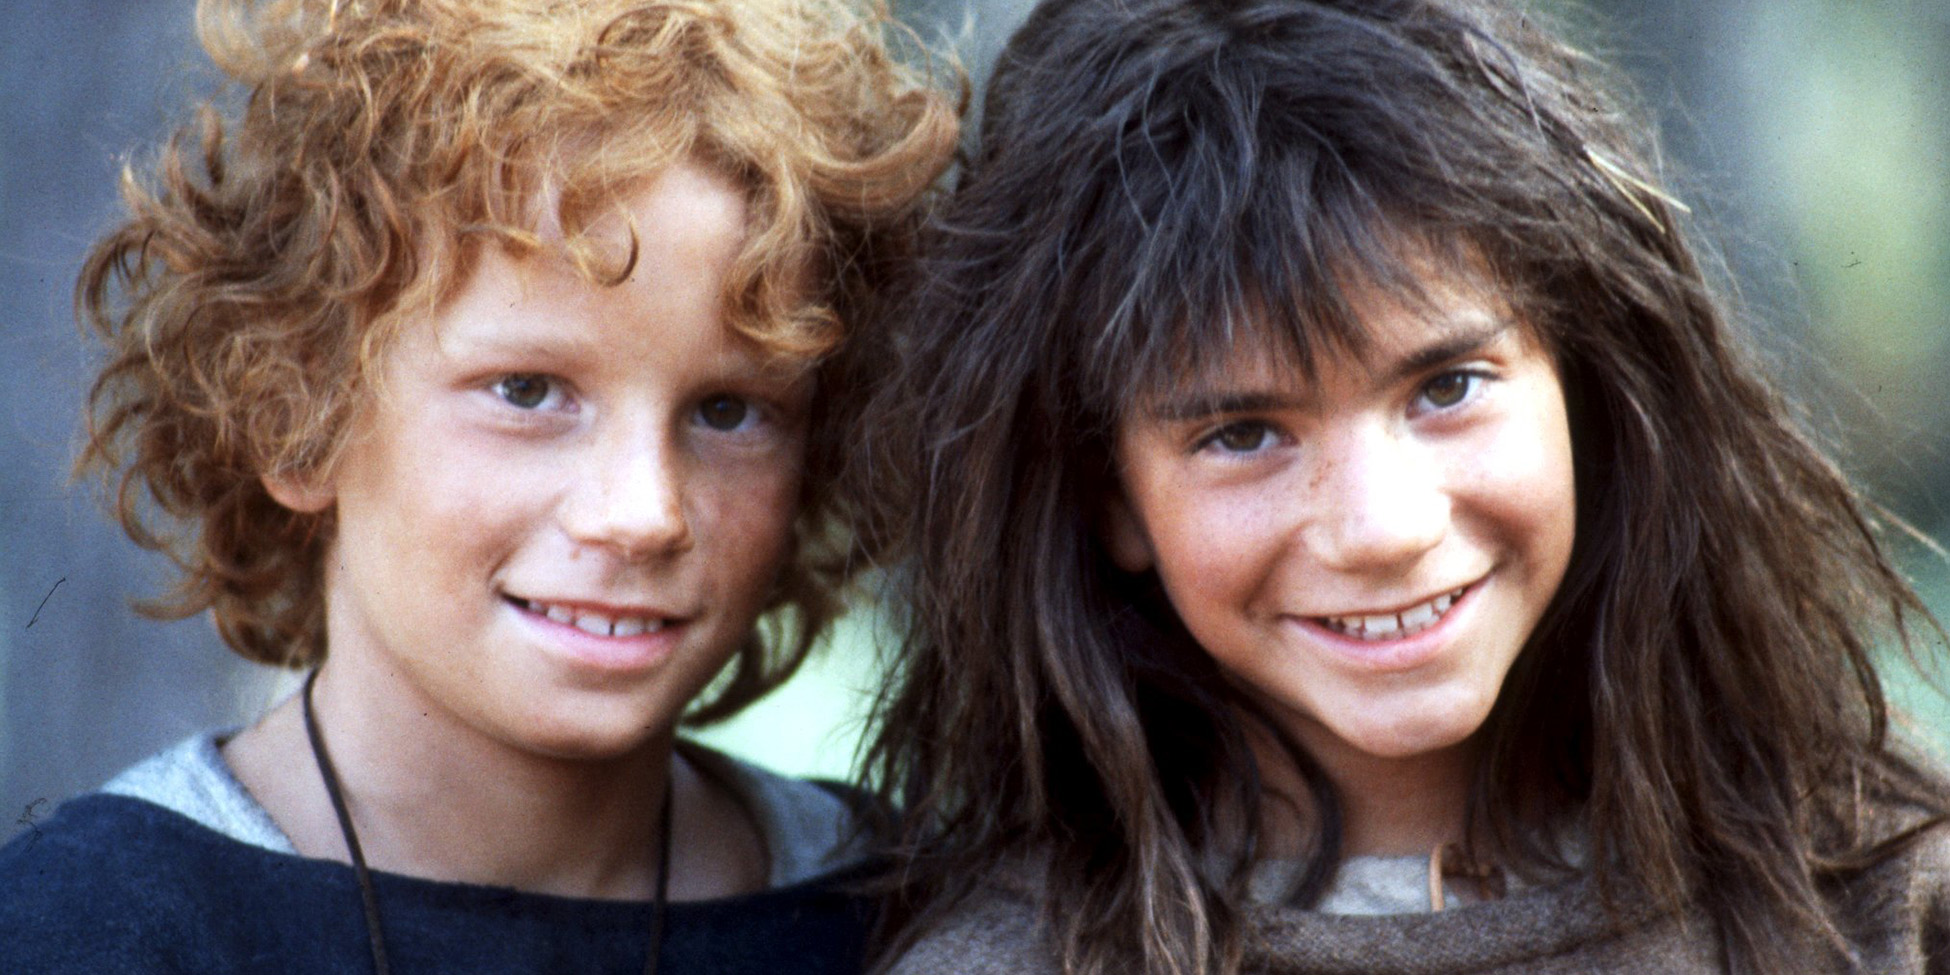 Ett foto på två barn, en pojke med rödlockigt hår och en flicka med mörkt rufsigt hår som ler.